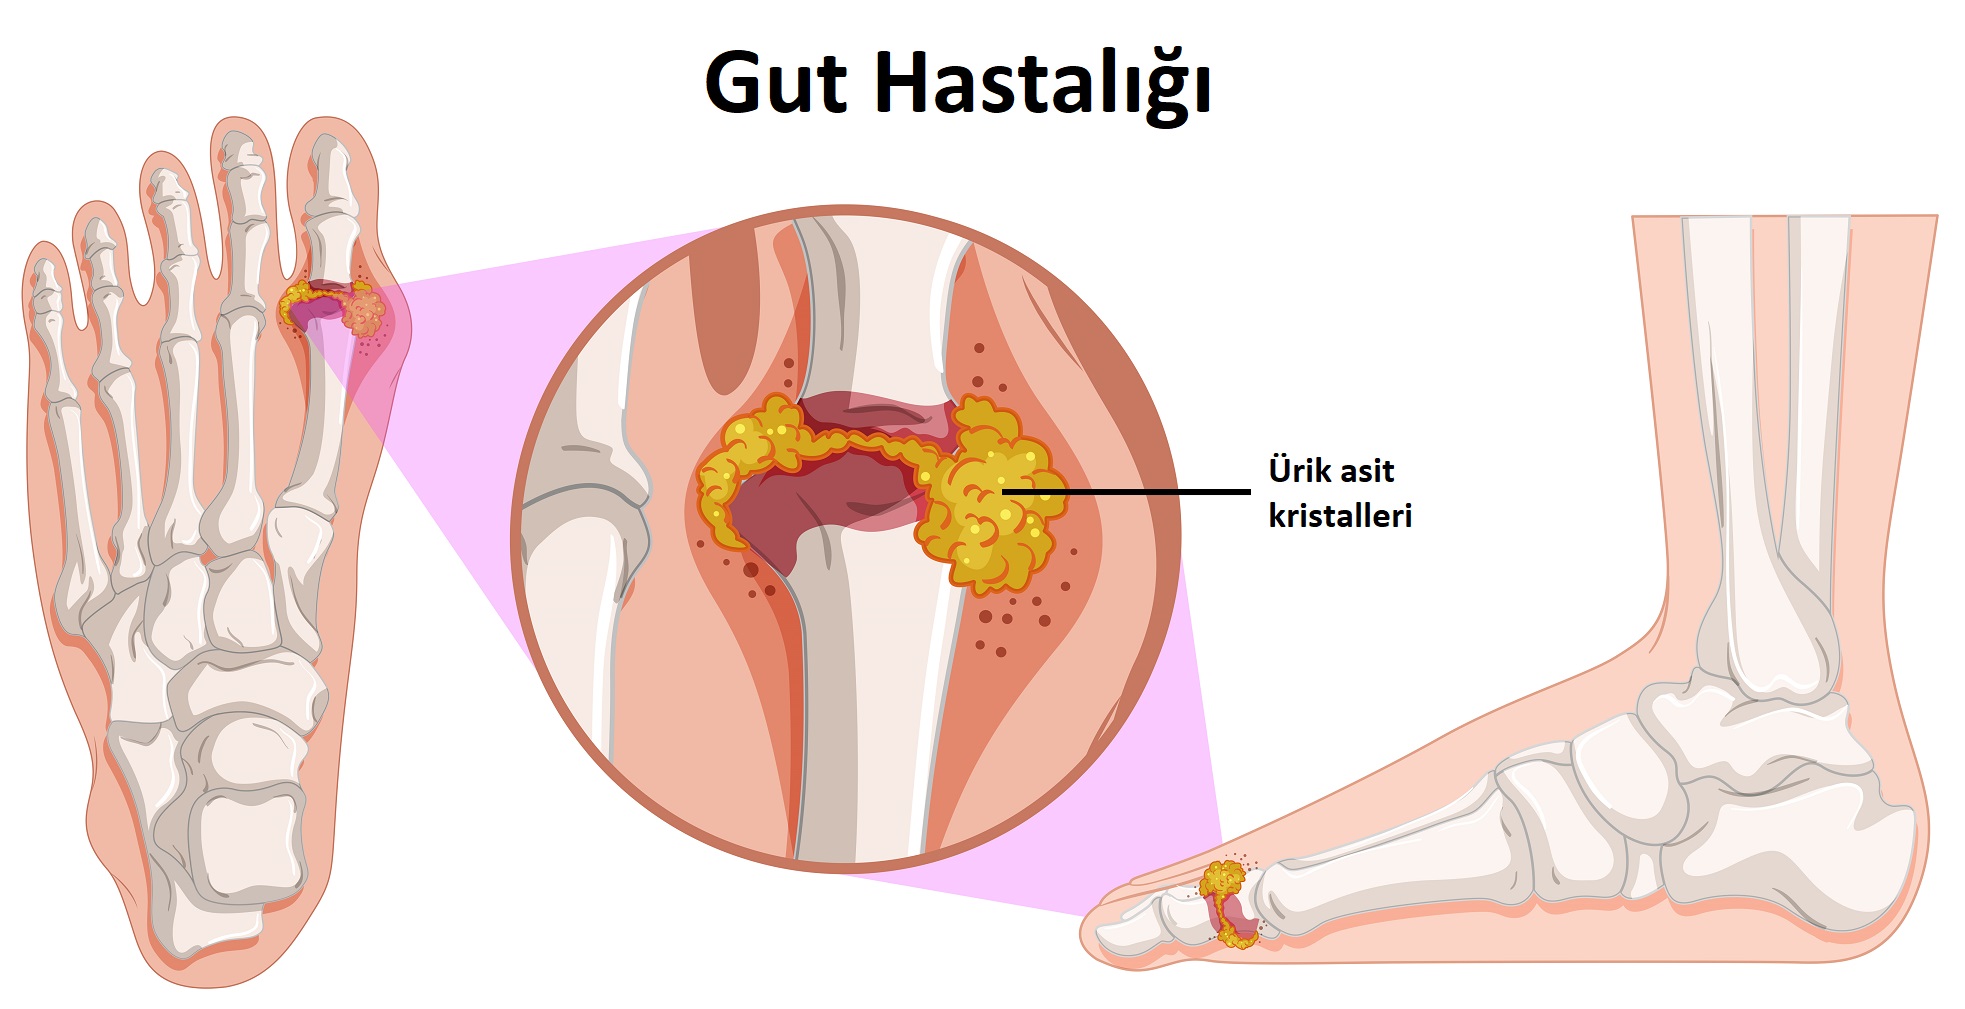 Gut u olanlar hangi tansiyon hapını kullanılır